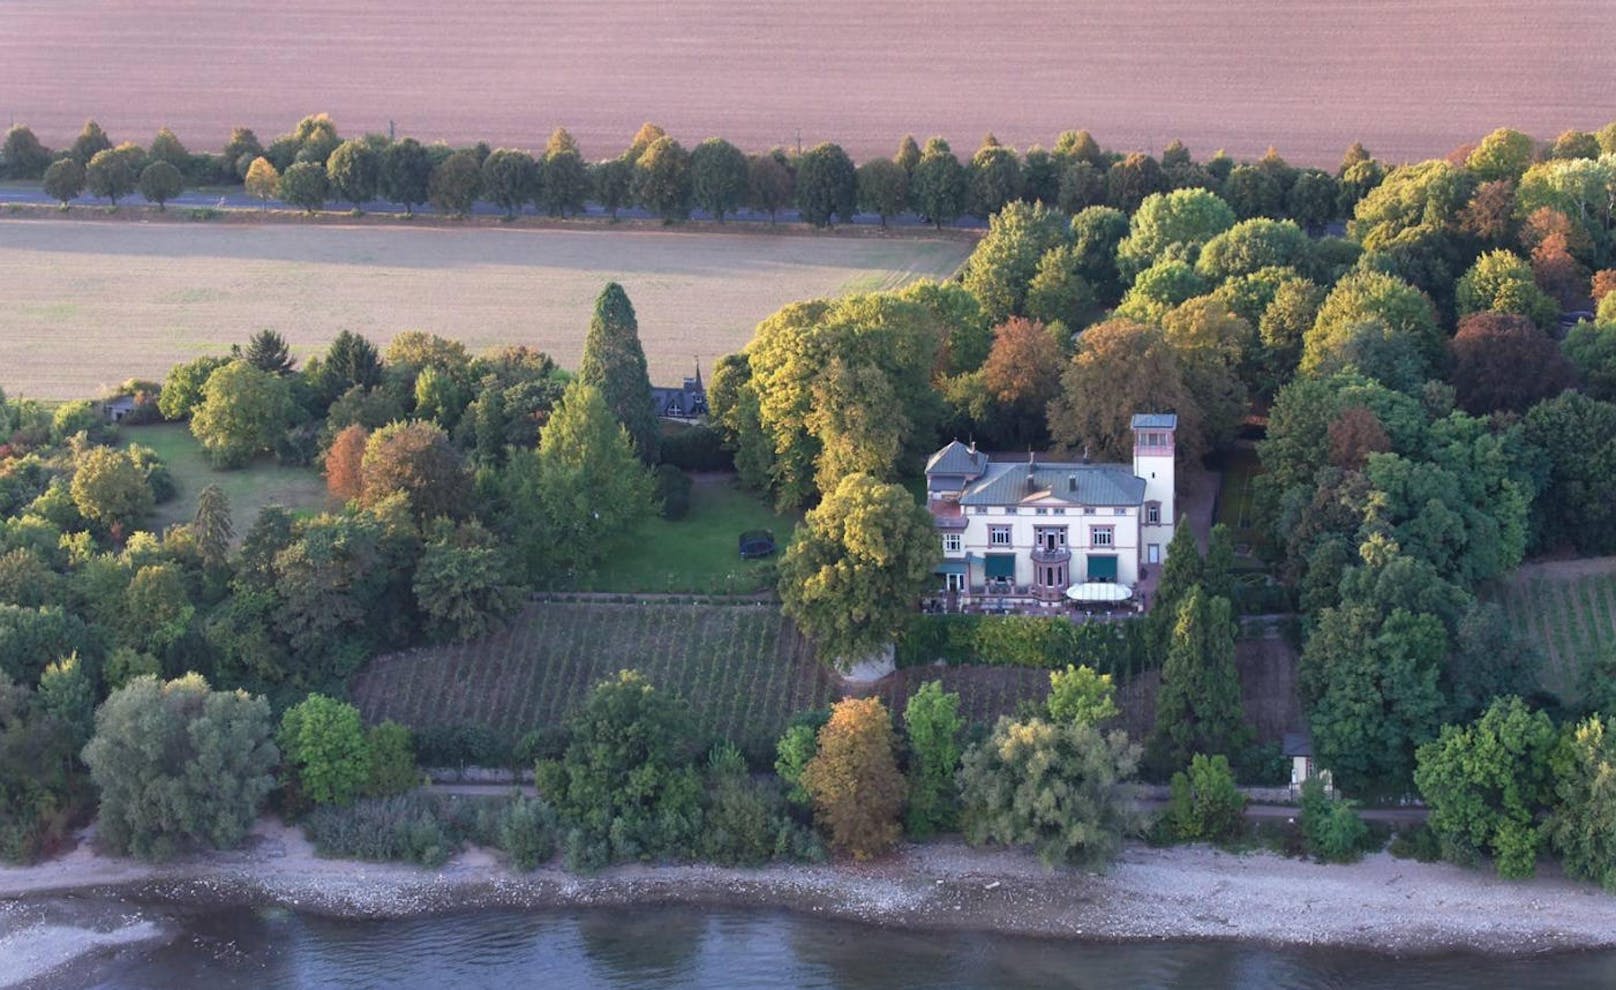 <b>Deutschland</b>
In der Nähe von Frankfurt, im deutschen Weinbaugebiet Rheingau, steht diese herrschaftliche Villa aus dem Jahr 1870.